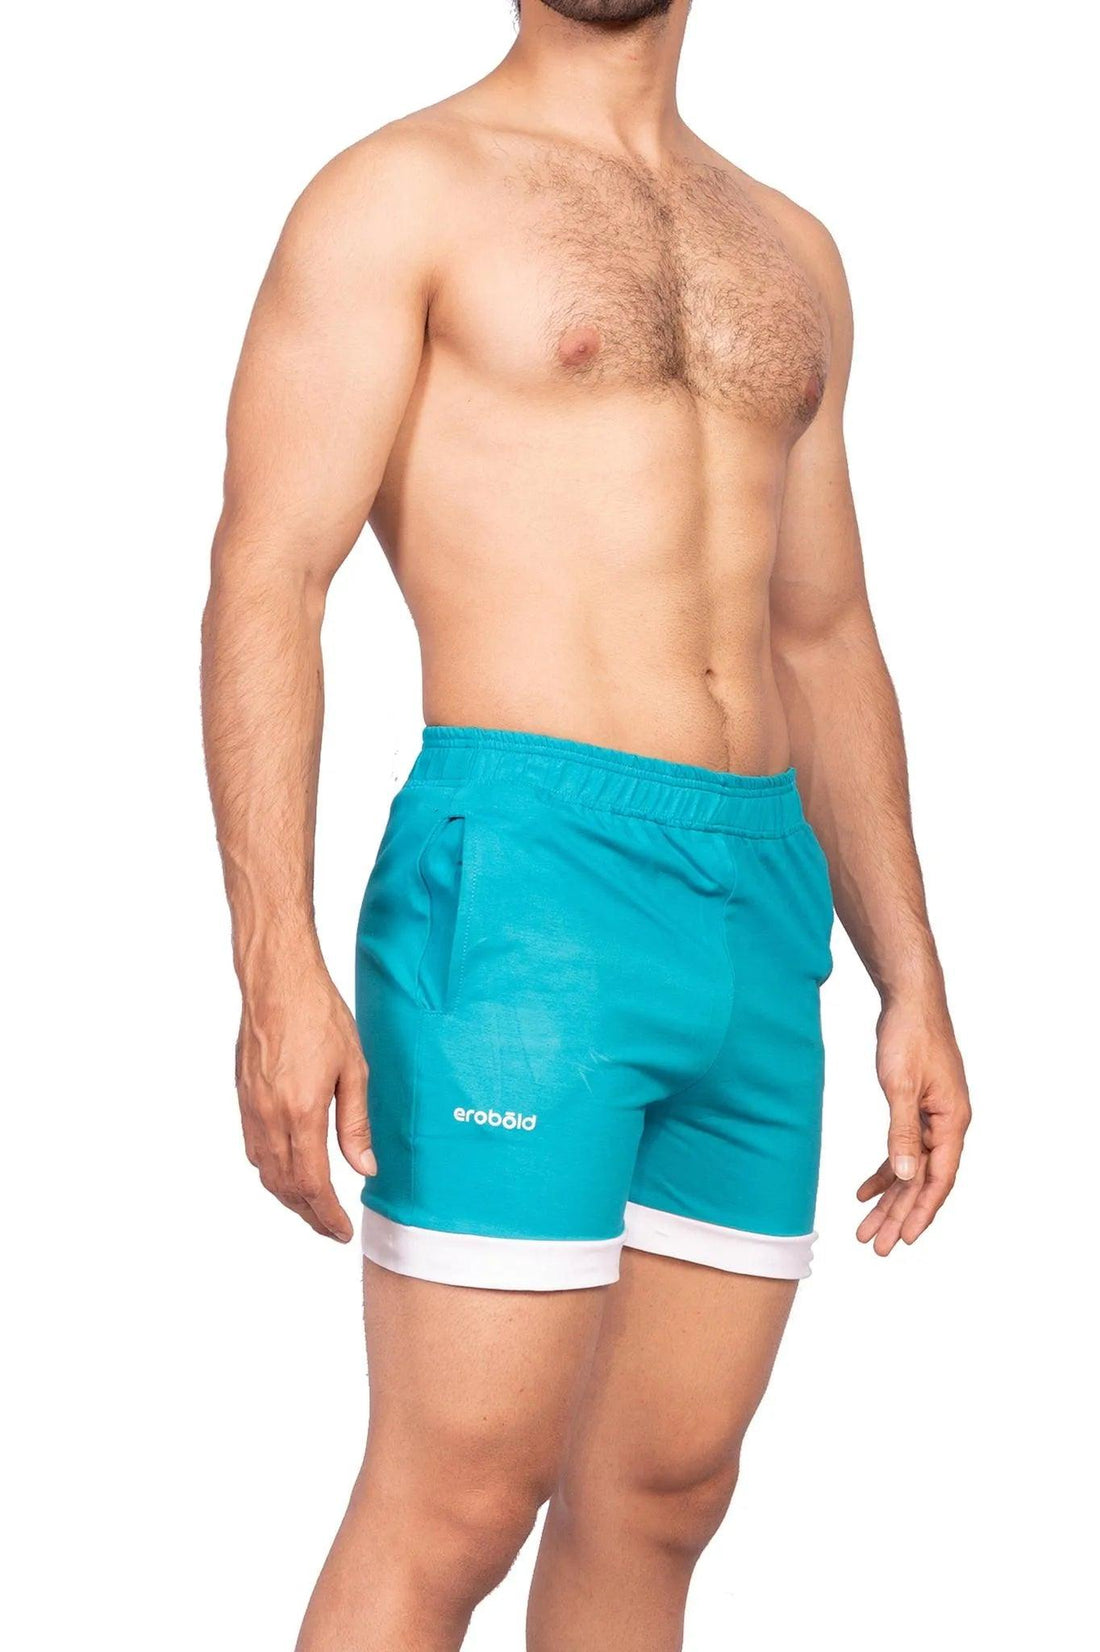 Shorts - Aqua Zephyr Shorts - Turquoise - Erobold - 